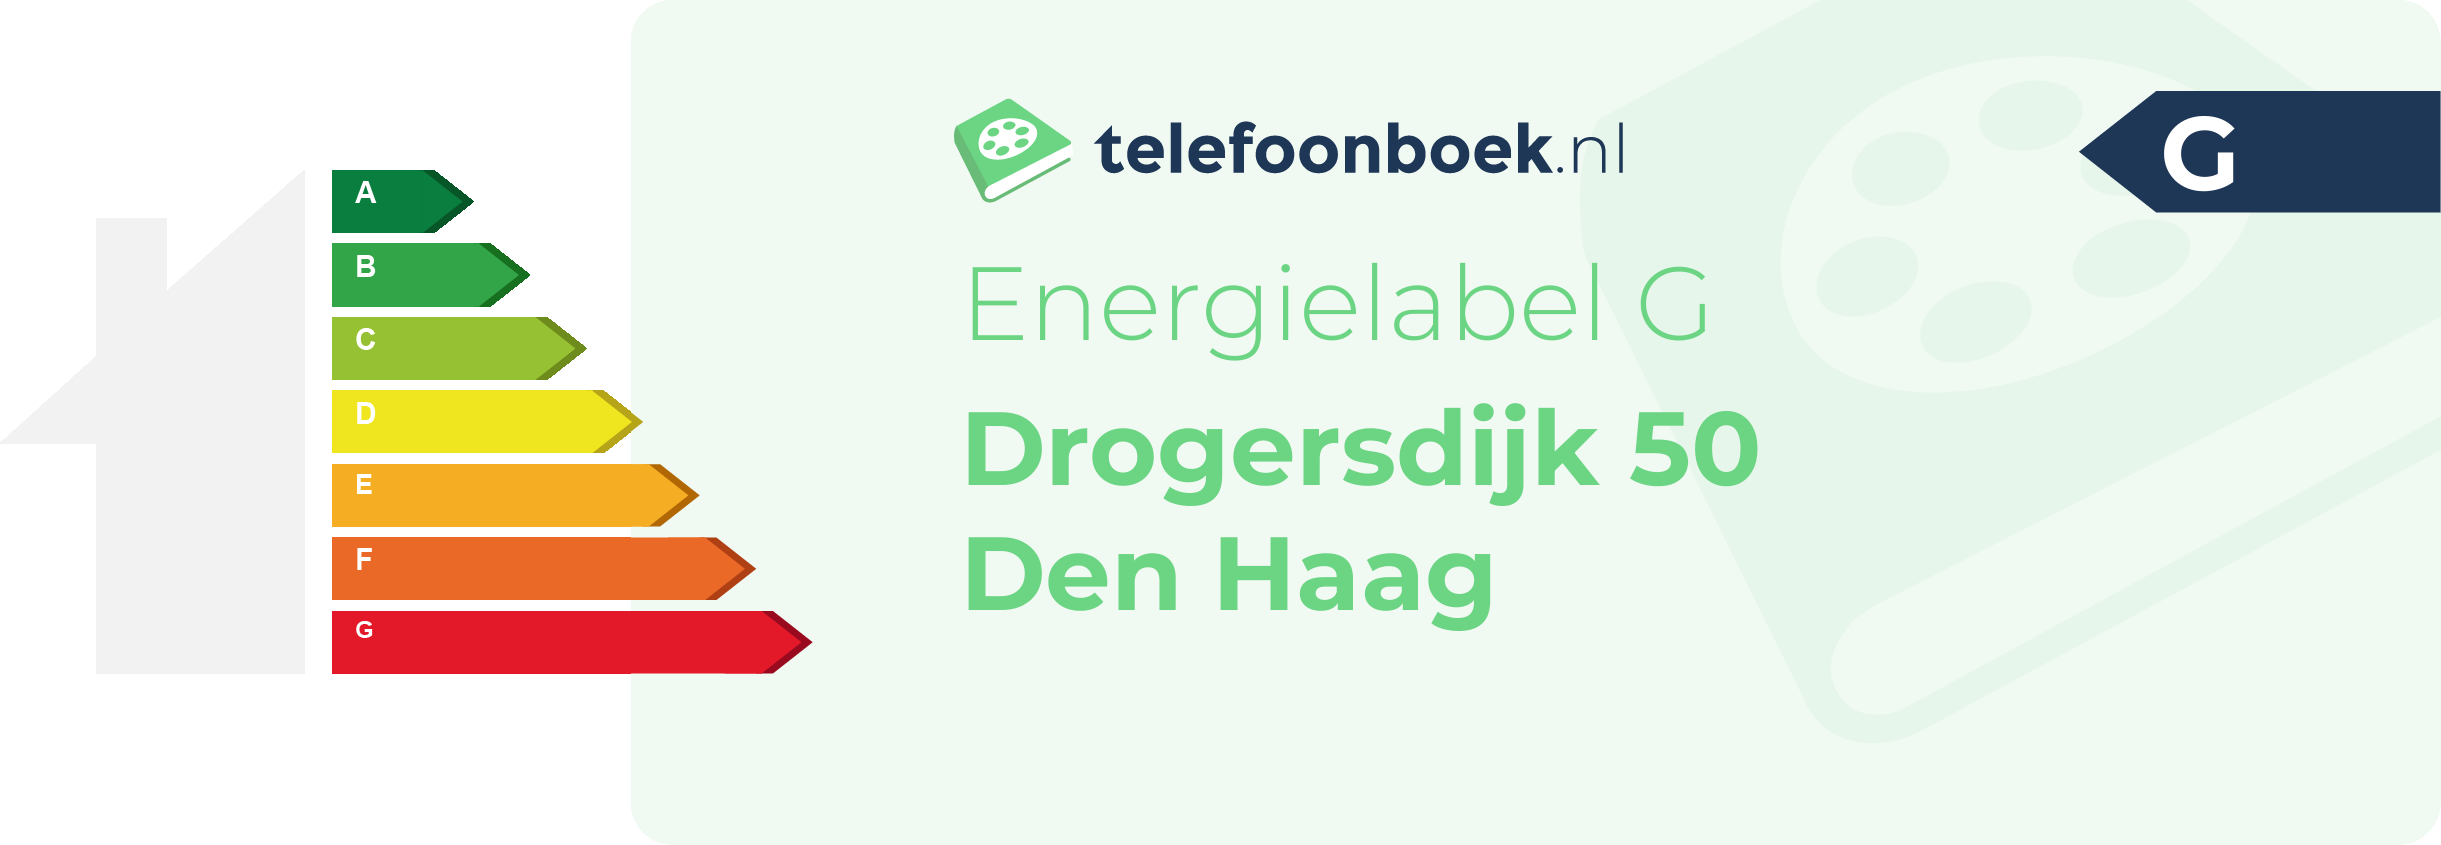 Energielabel Drogersdijk 50 Den Haag